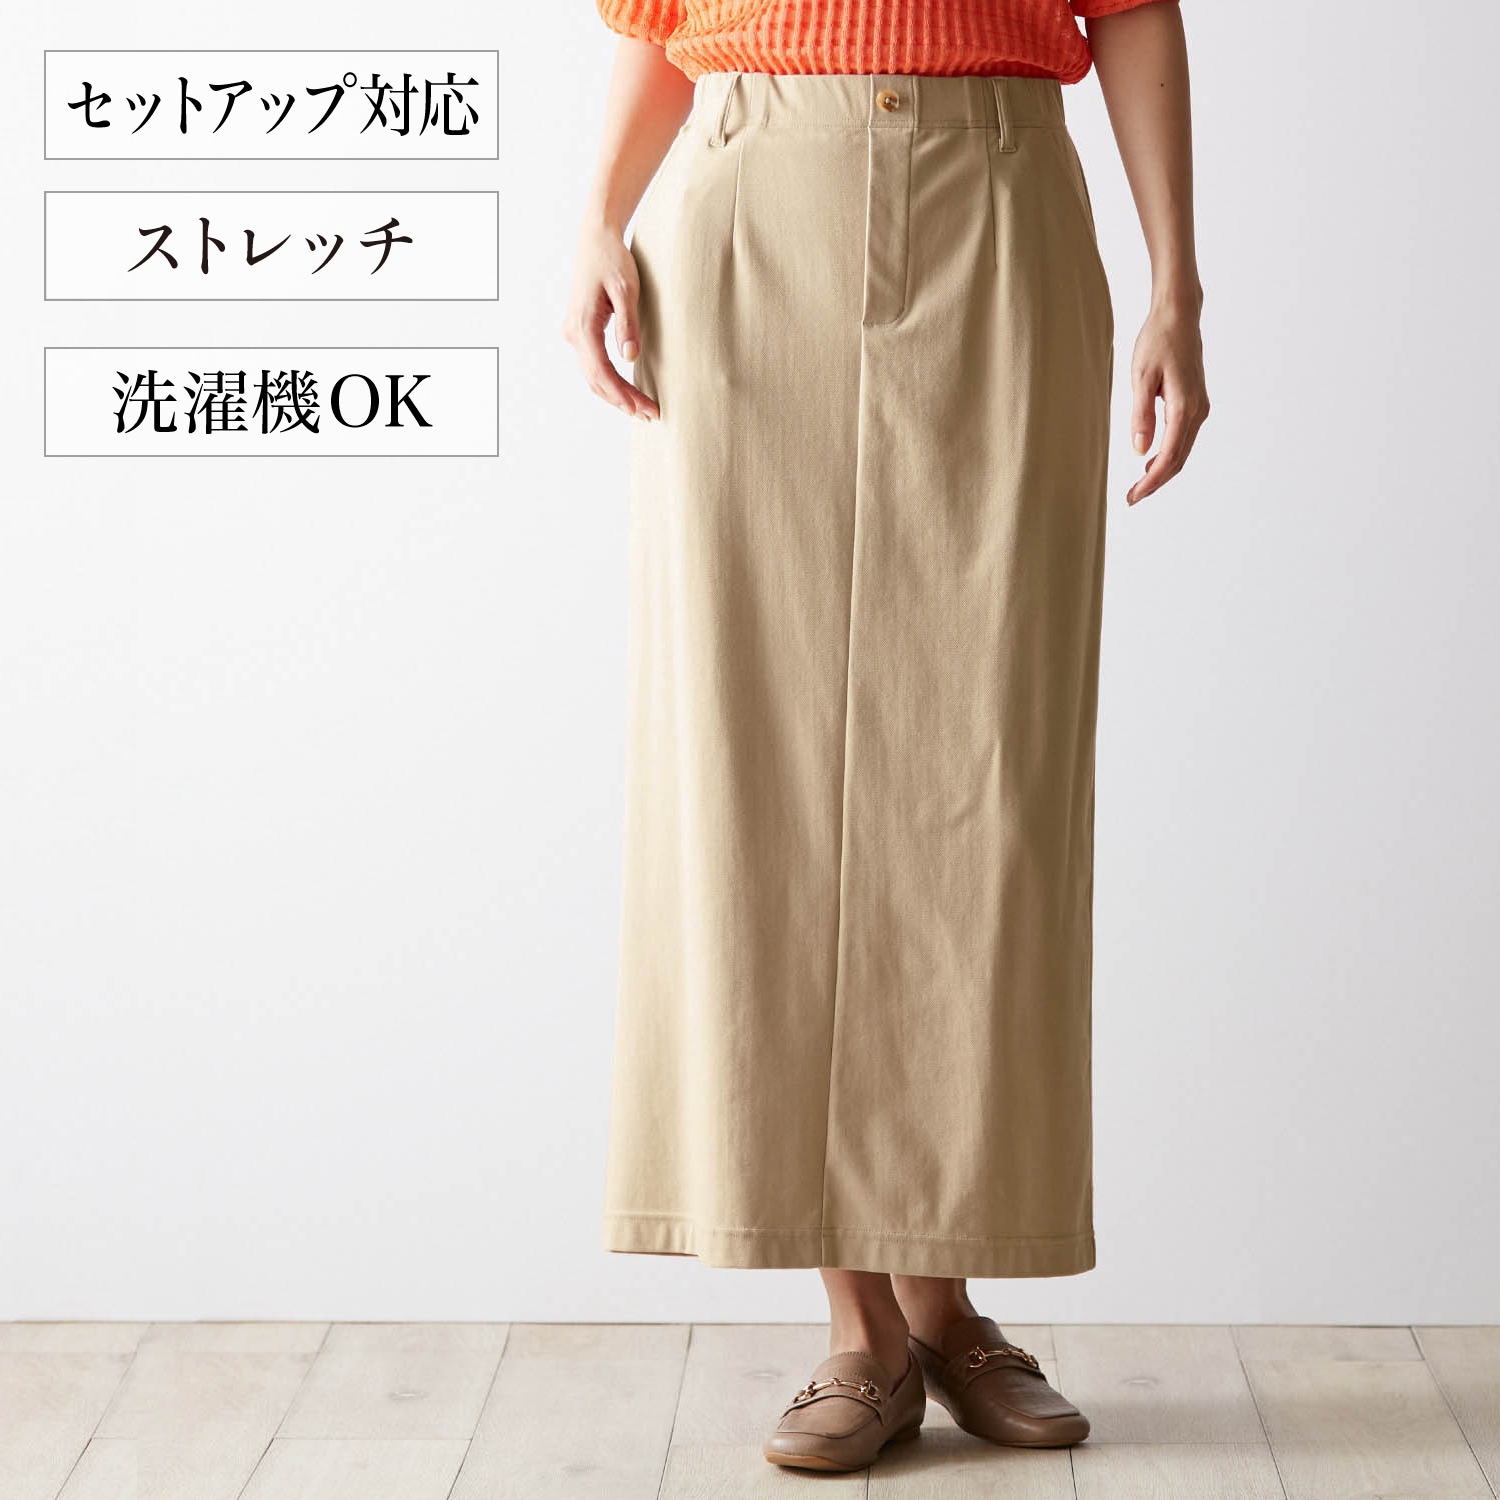 【ナチュラル & スタンダード/natural & standard】Iラインスカート【セットアップ可】画像